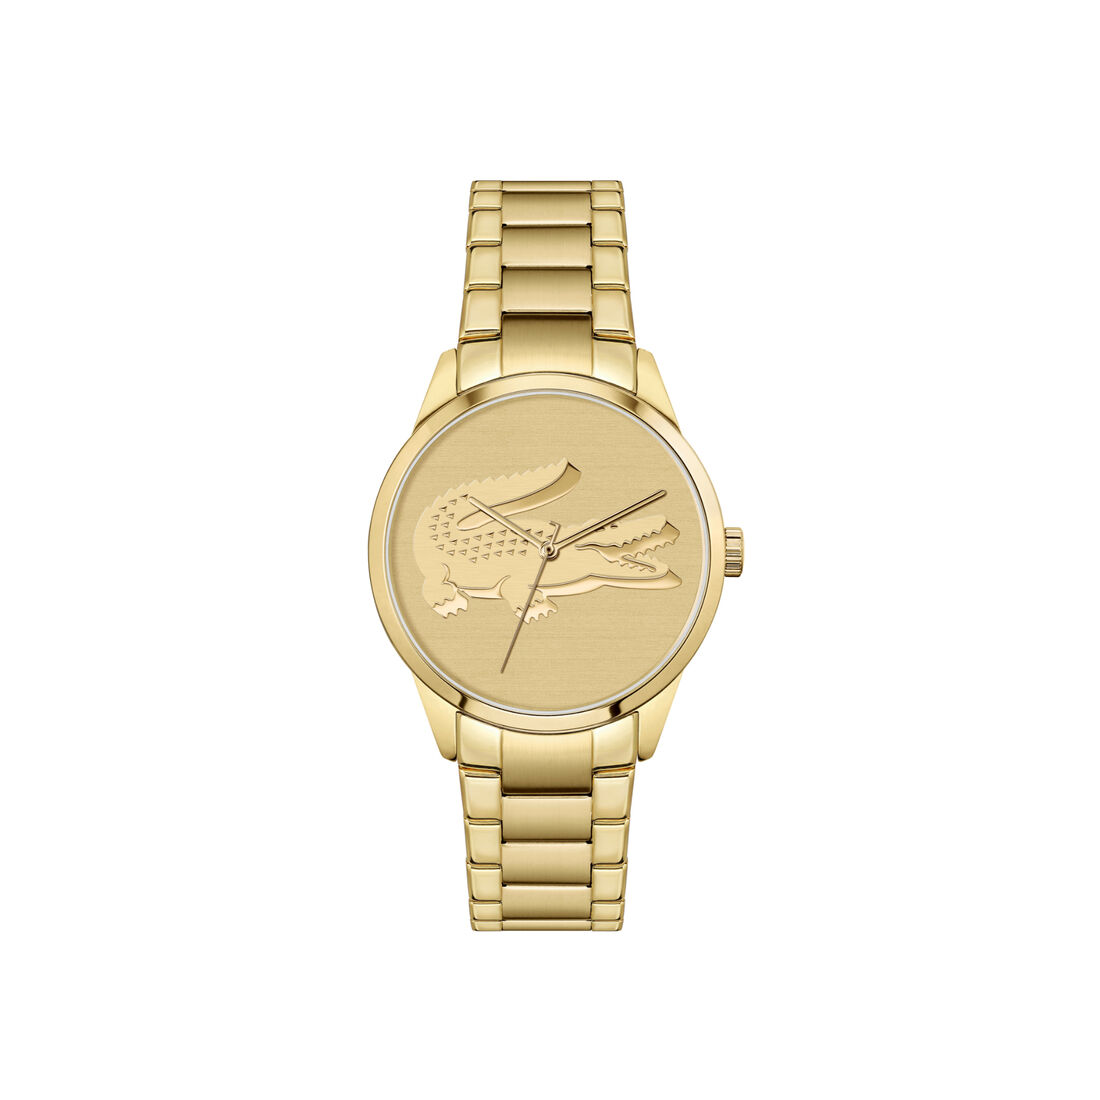 ساعة لاكوست بمينا رفيع ذهبي للنساء مجموعة Lacoste Ladycroc